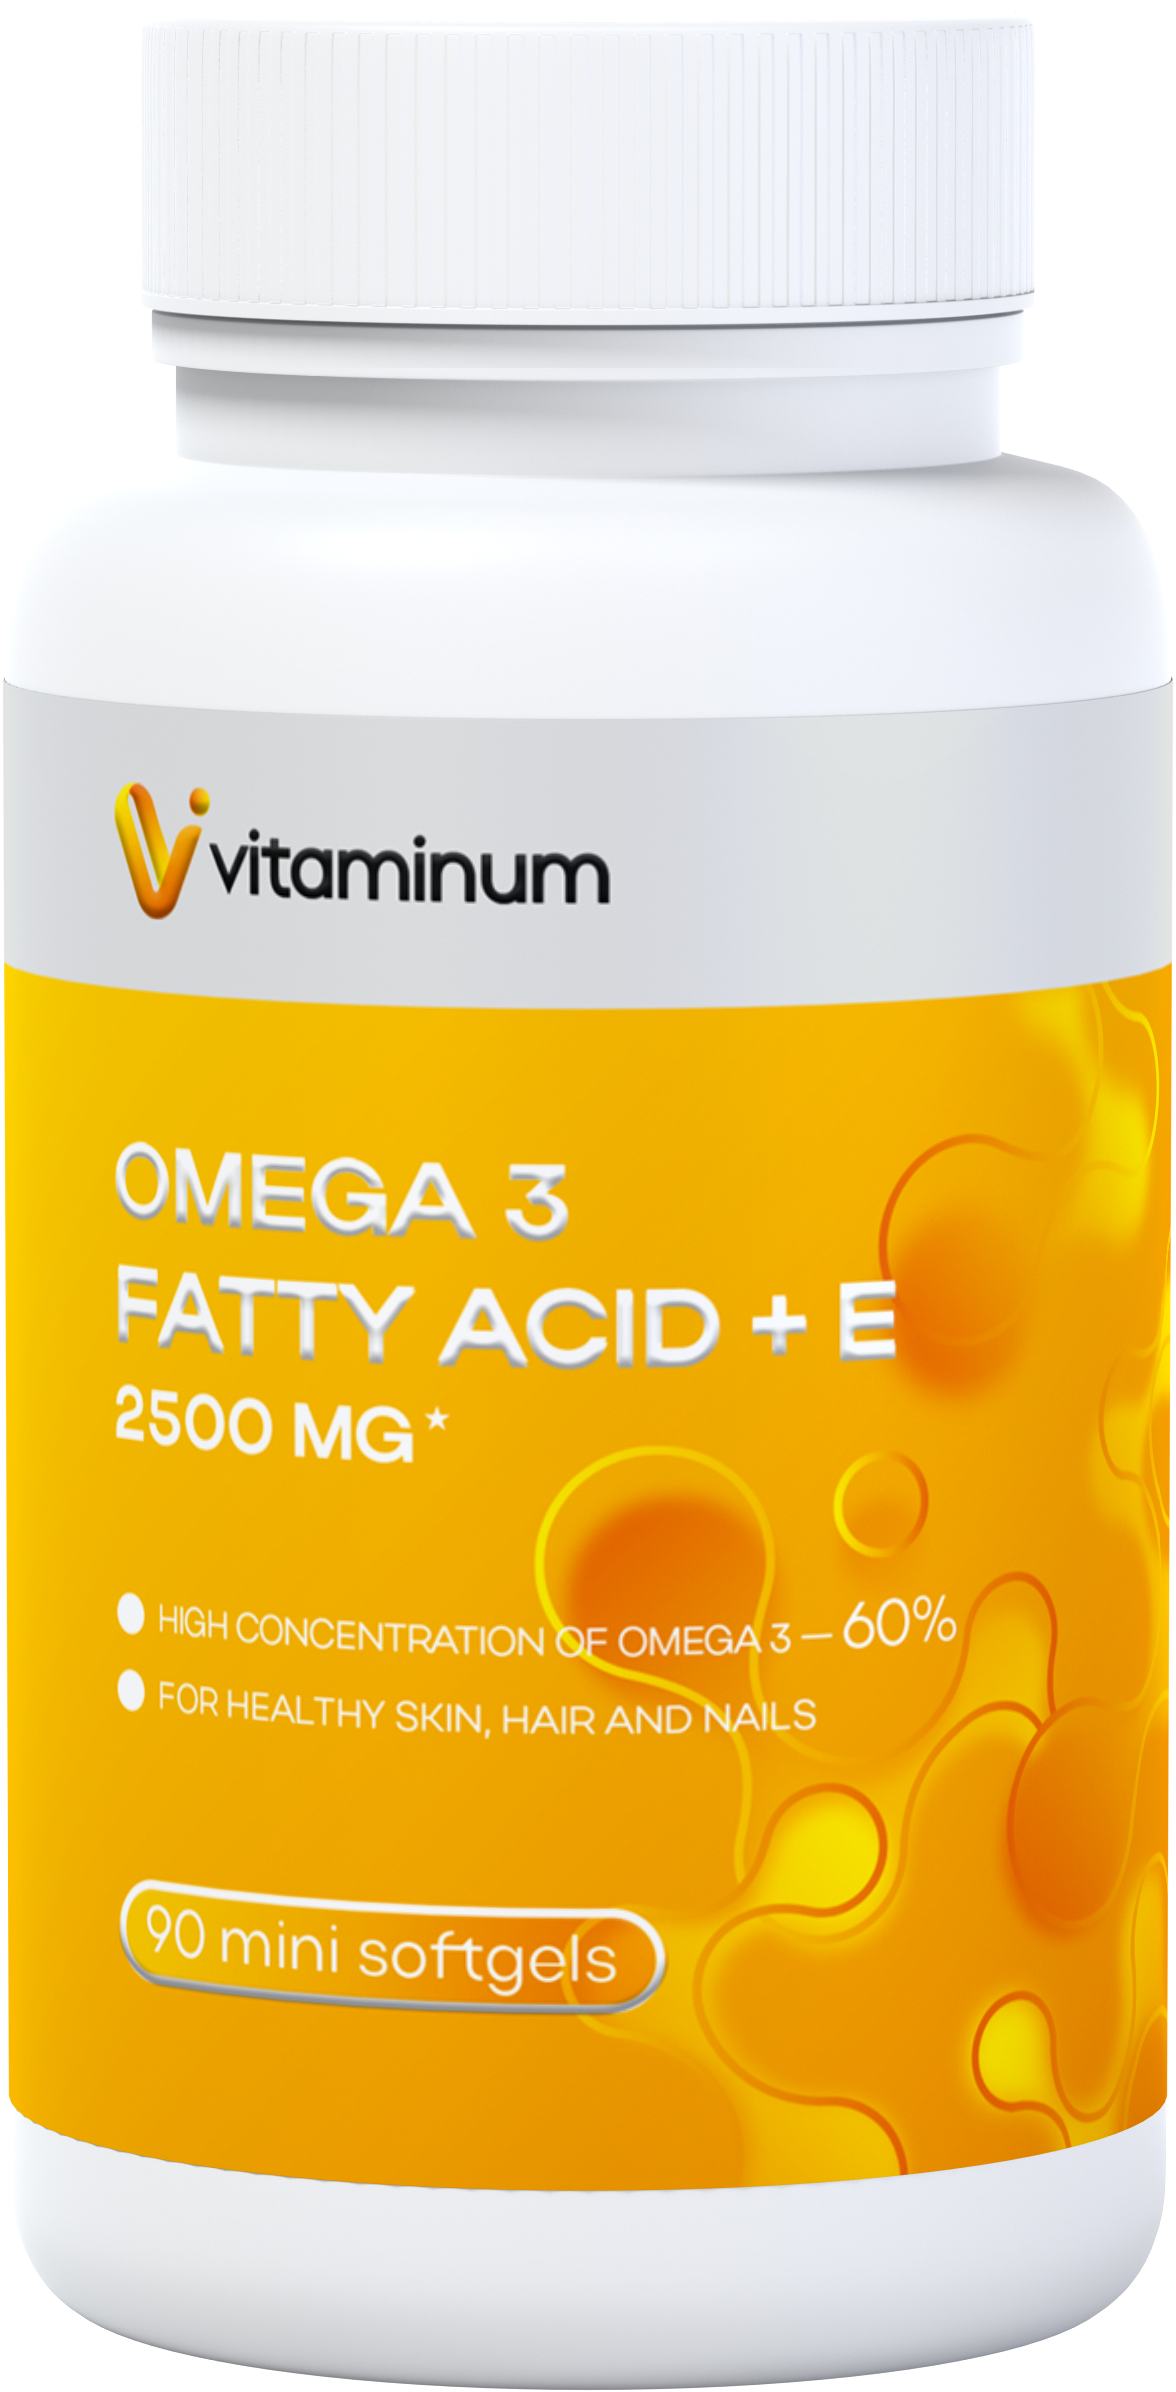  Vitaminum ОМЕГА 3 60% + витамин Е (2500 MG*) 90 капсул 700 мг   в Сегеже